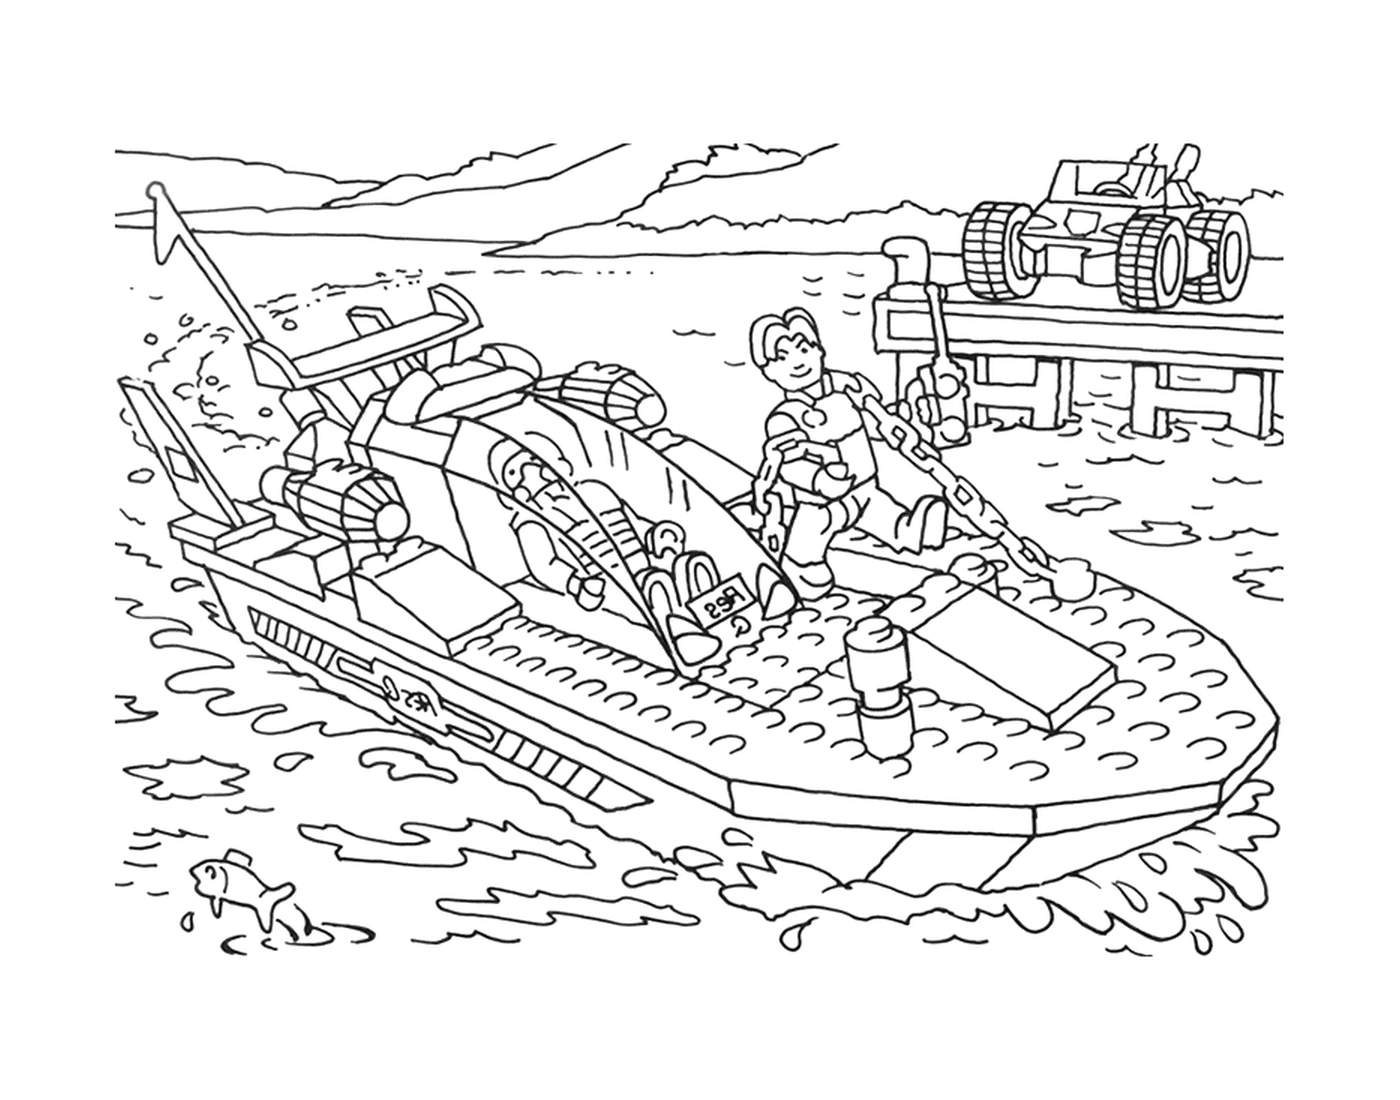  Homem em um barco Lego 